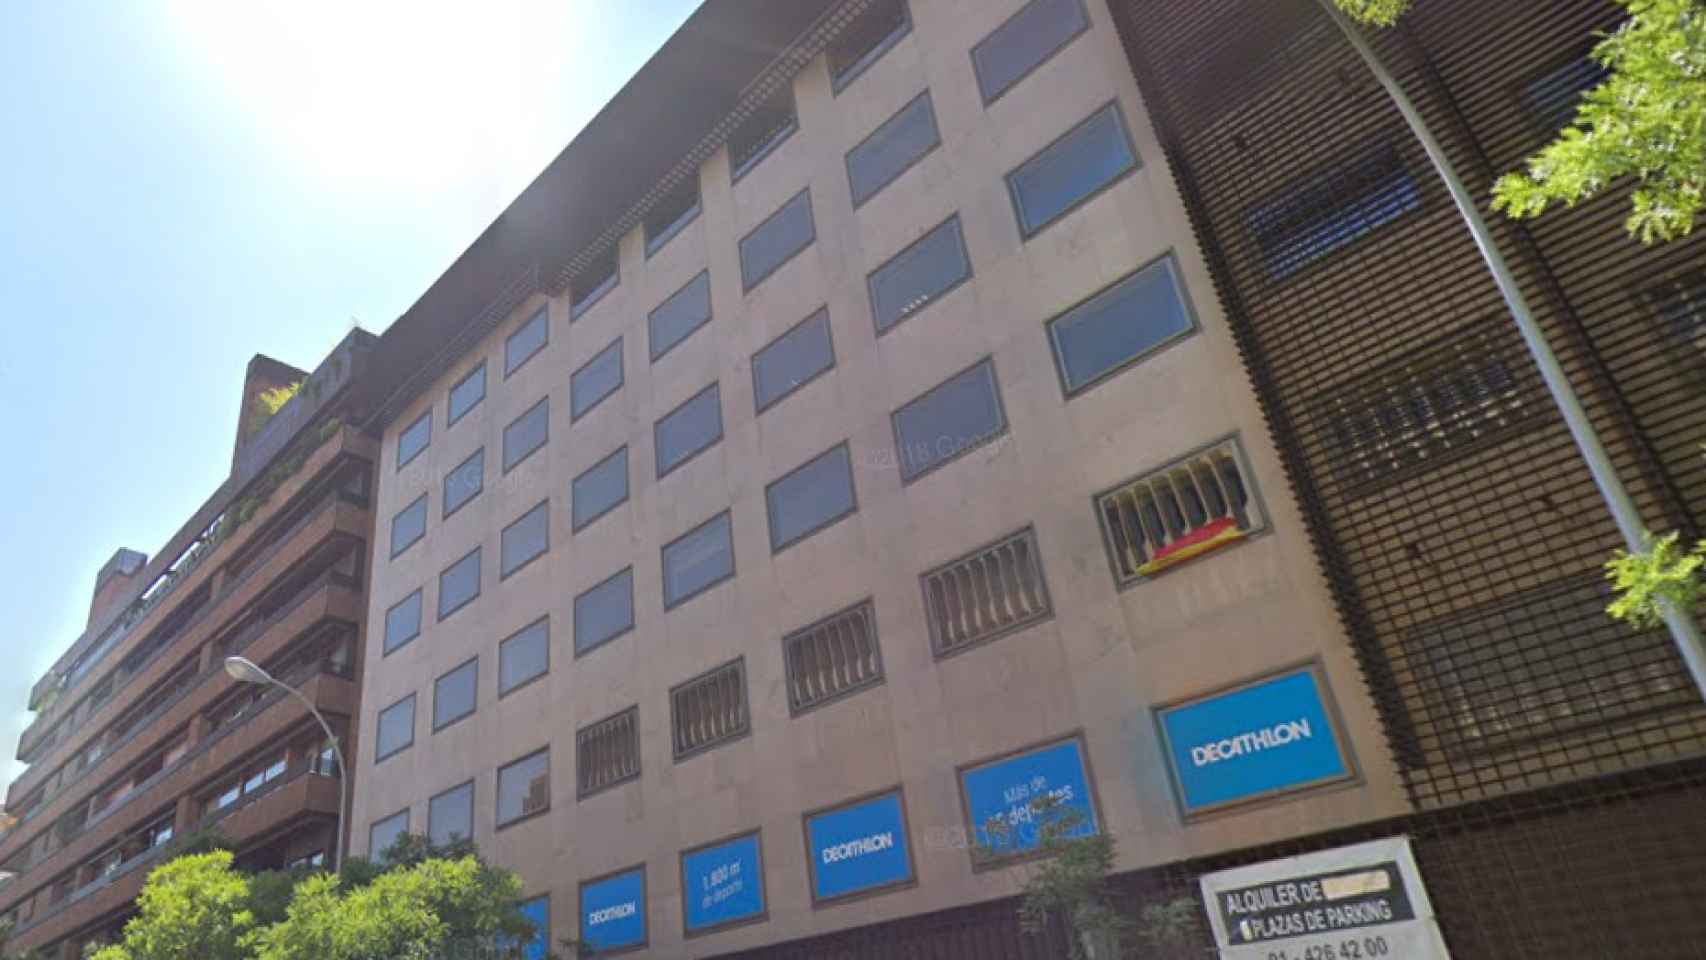 Nueva sede de UBP Gestión Institucional en Madrid / CG